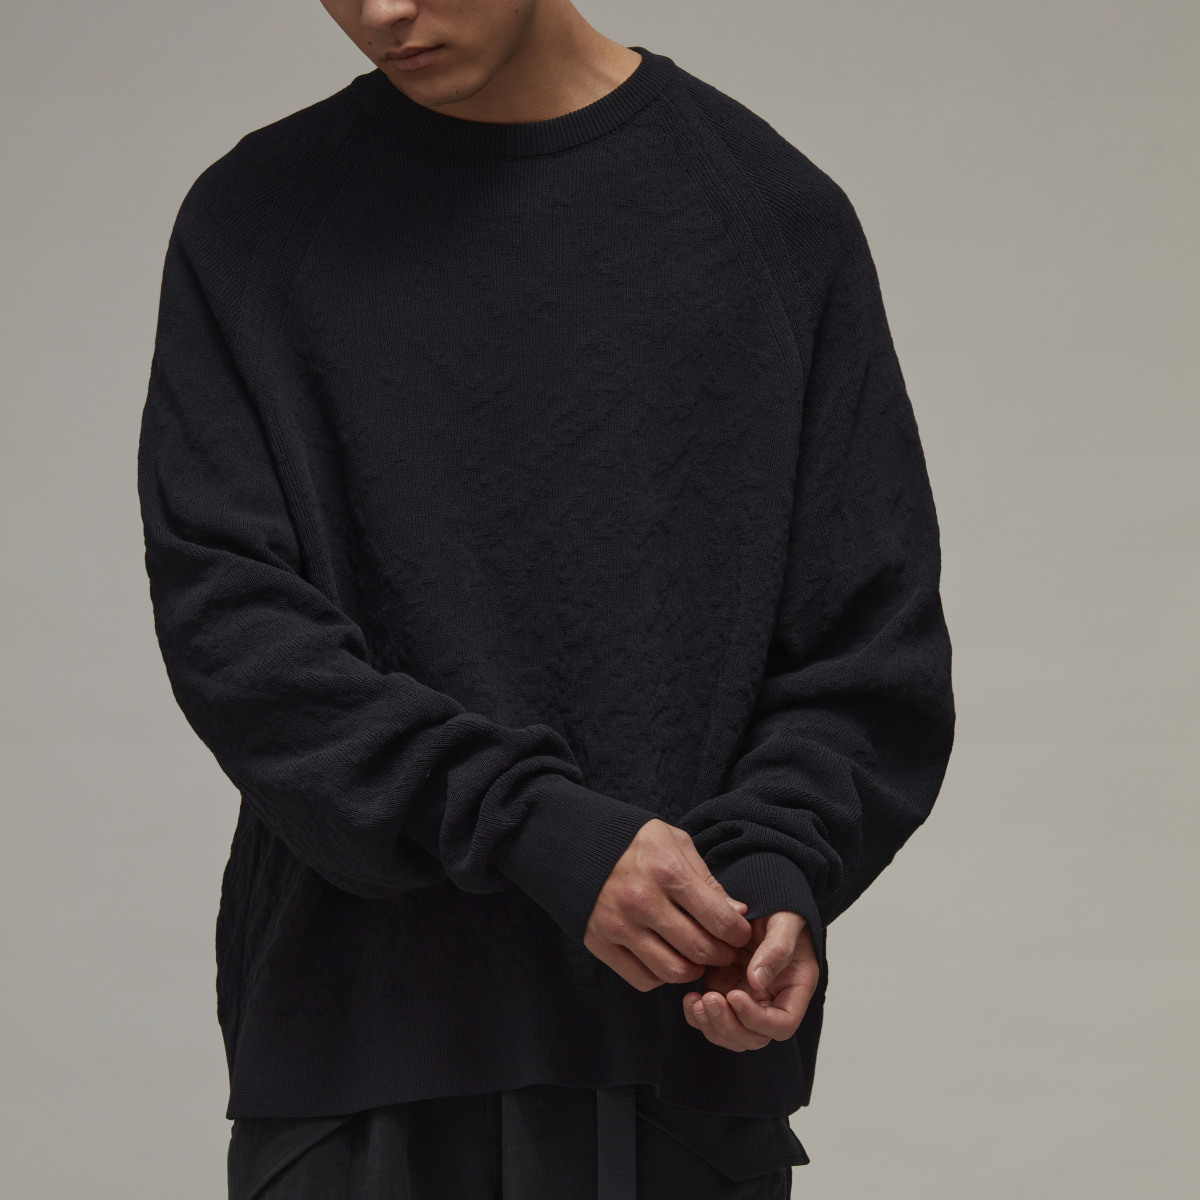 Adidas Y-3 Knit Crew Sweater. 9